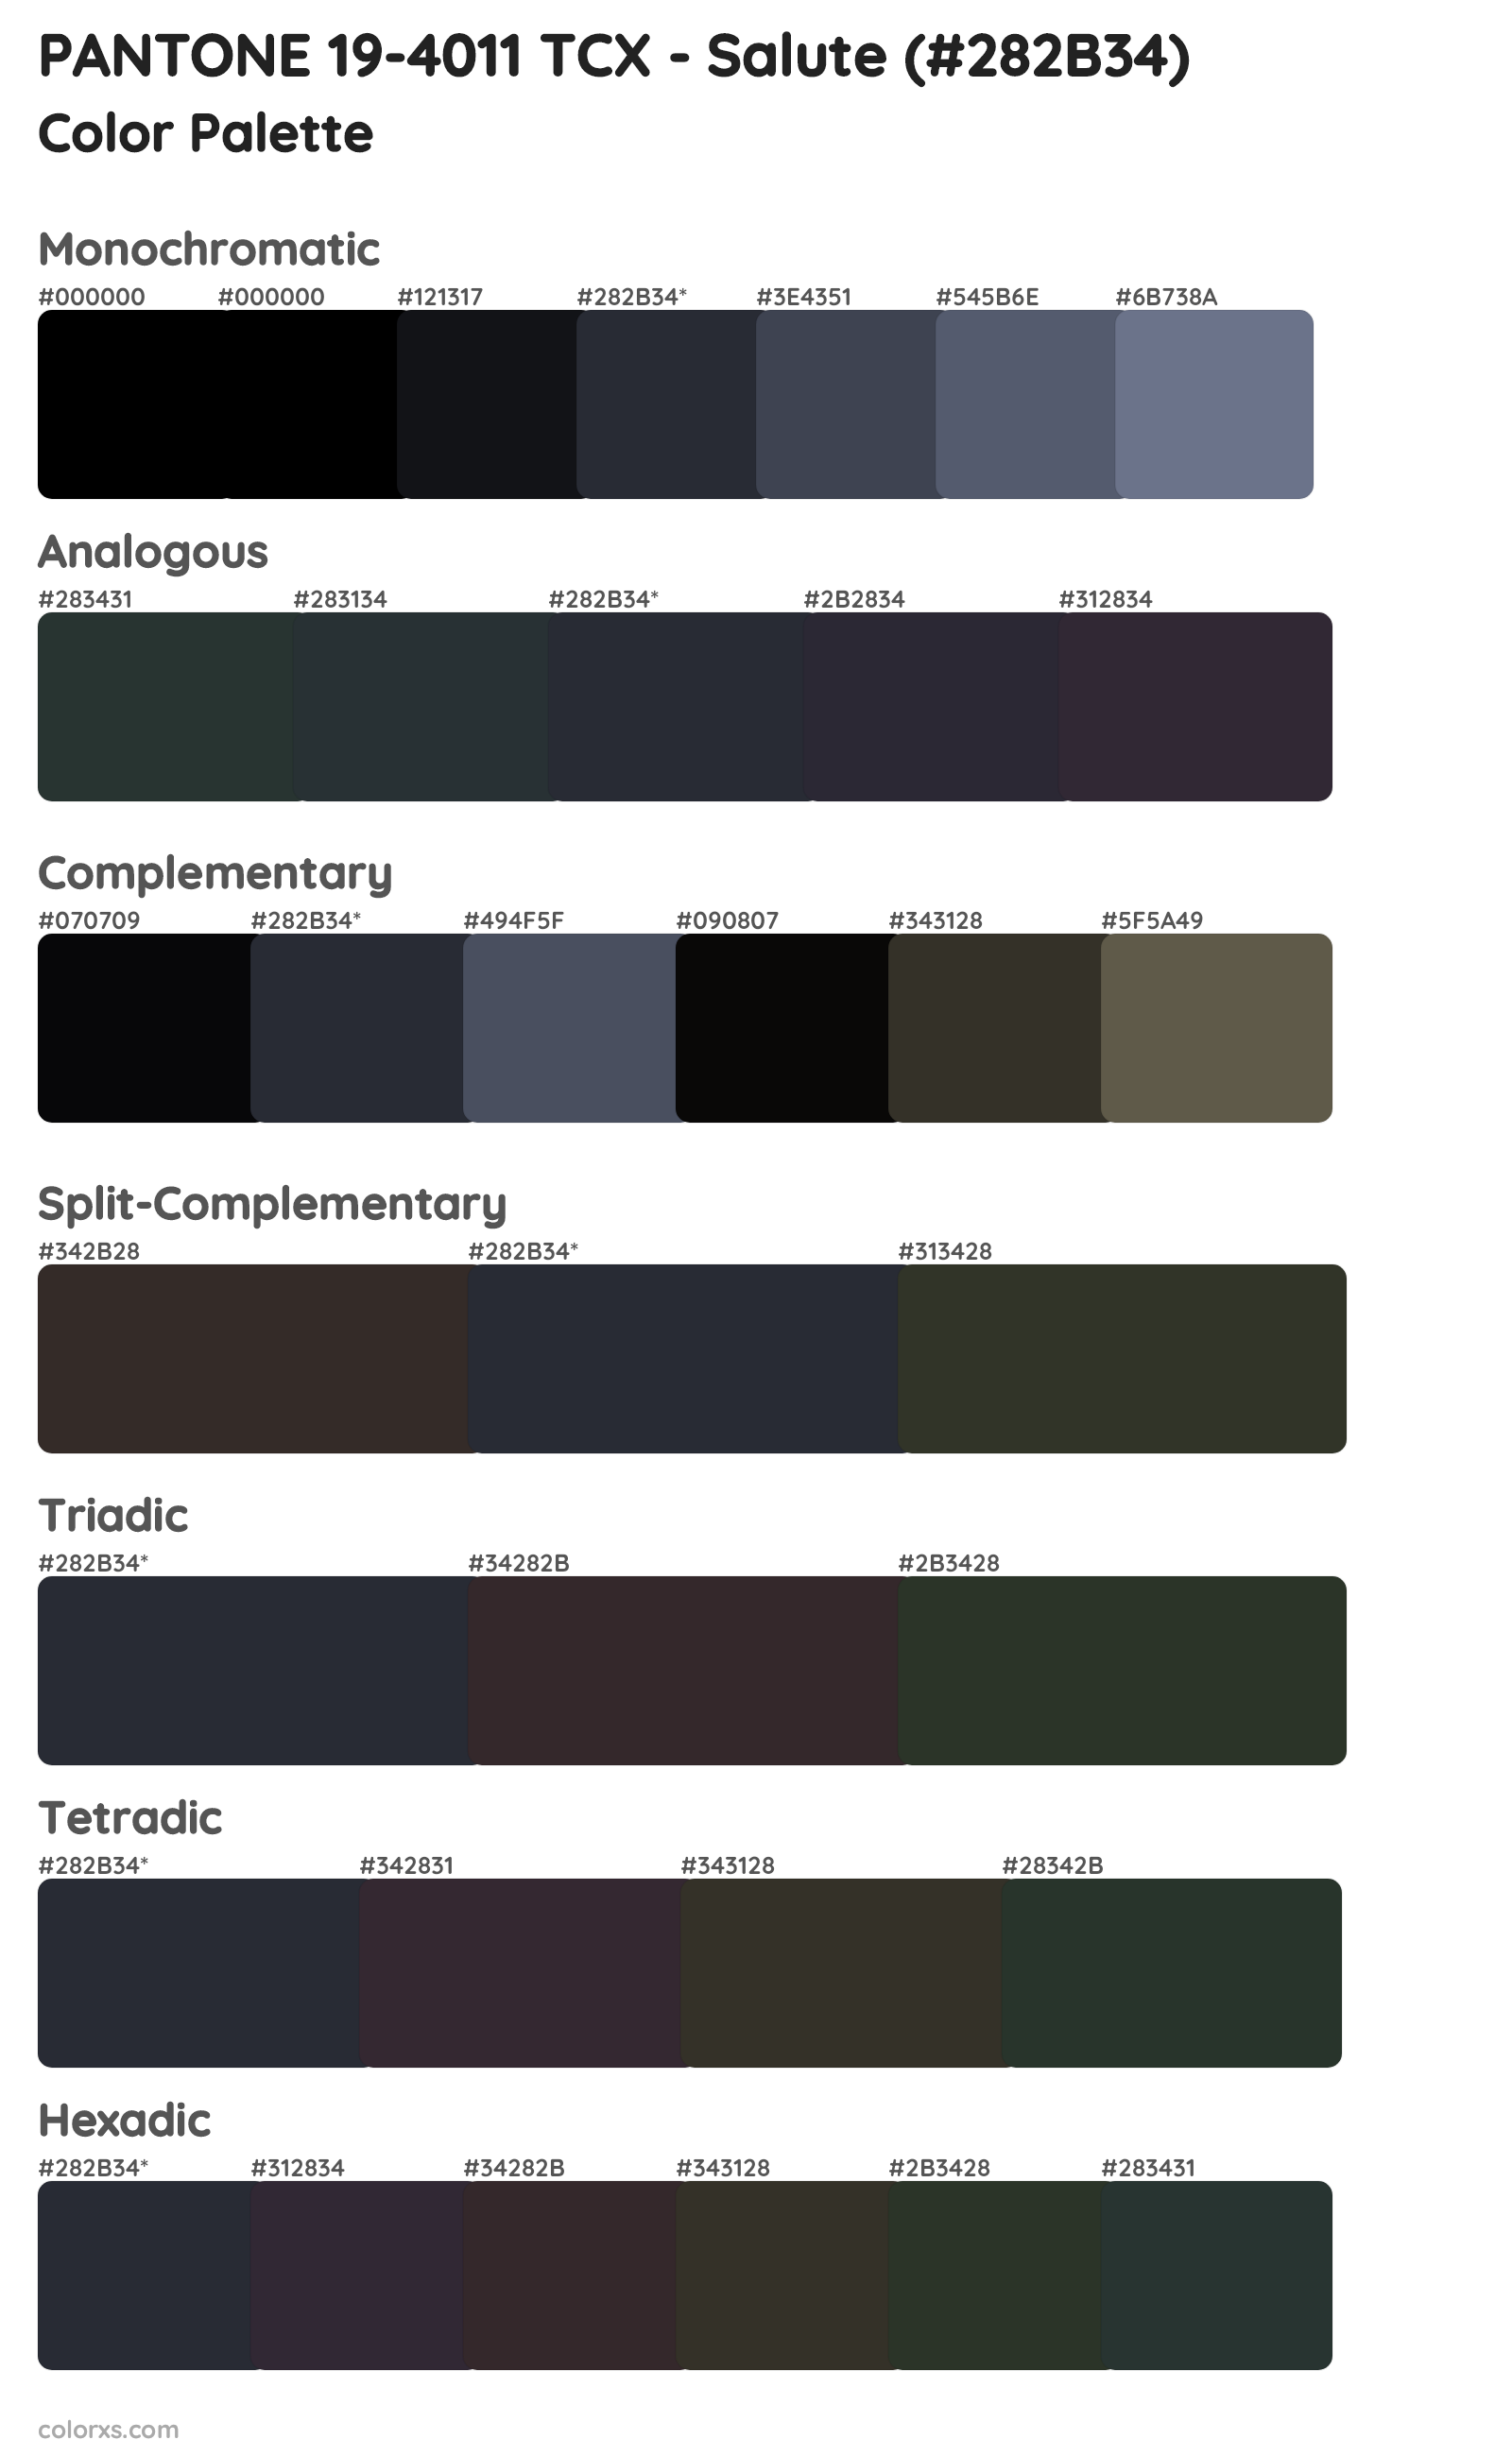 PANTONE 19-4011 TCX - Salute Color Scheme Palettes